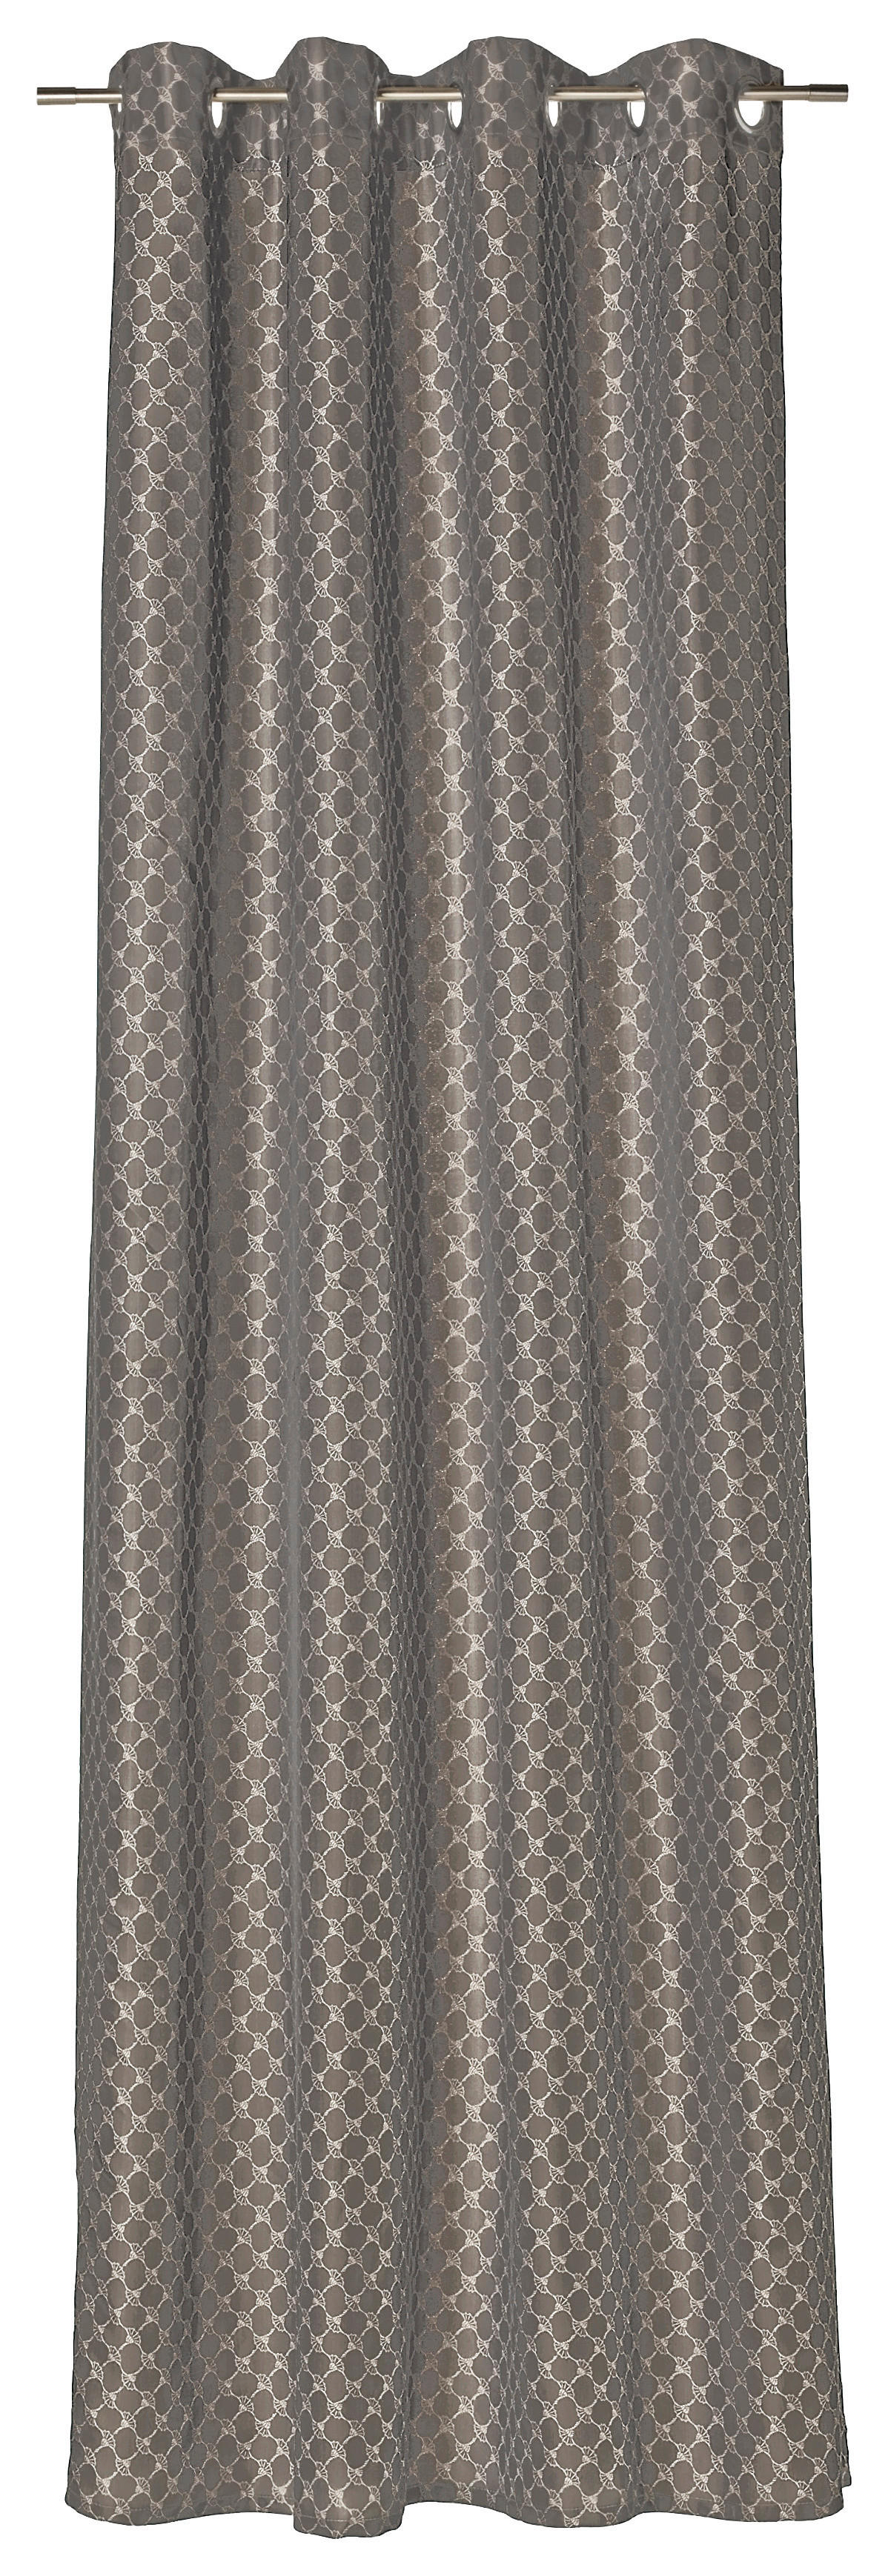 ÖSENSCHAL J-Allovers blickdicht 140/250 cm   - Braun/Grau, Design, Textil (140/250cm) - Joop!